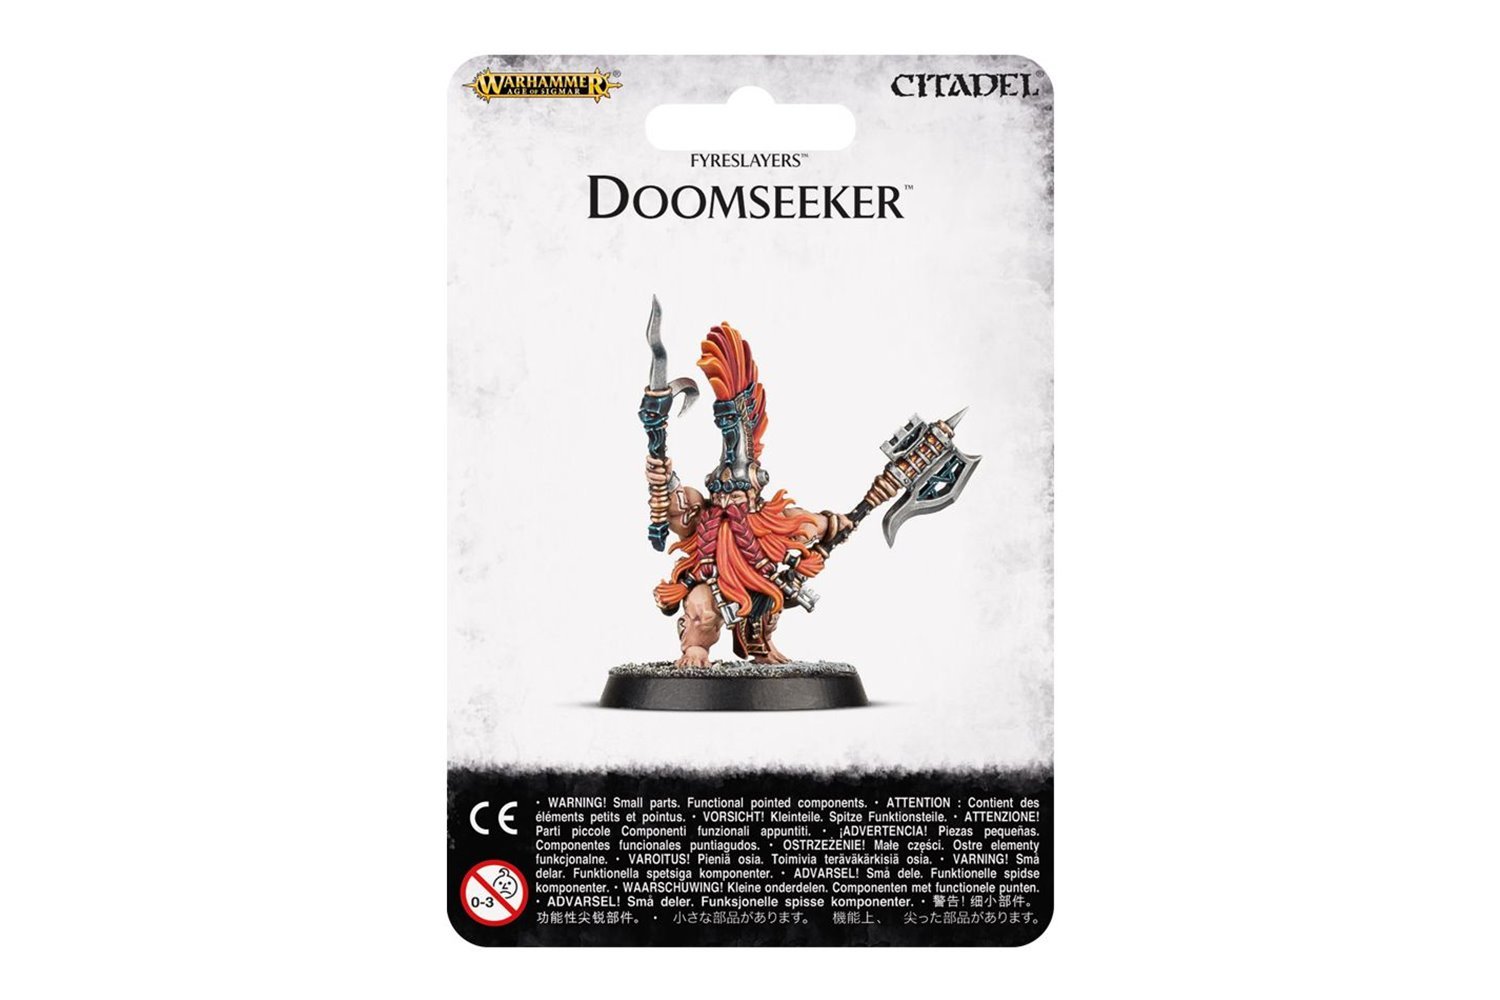 Warhammer 40k - Doomseeker Audiobook Free